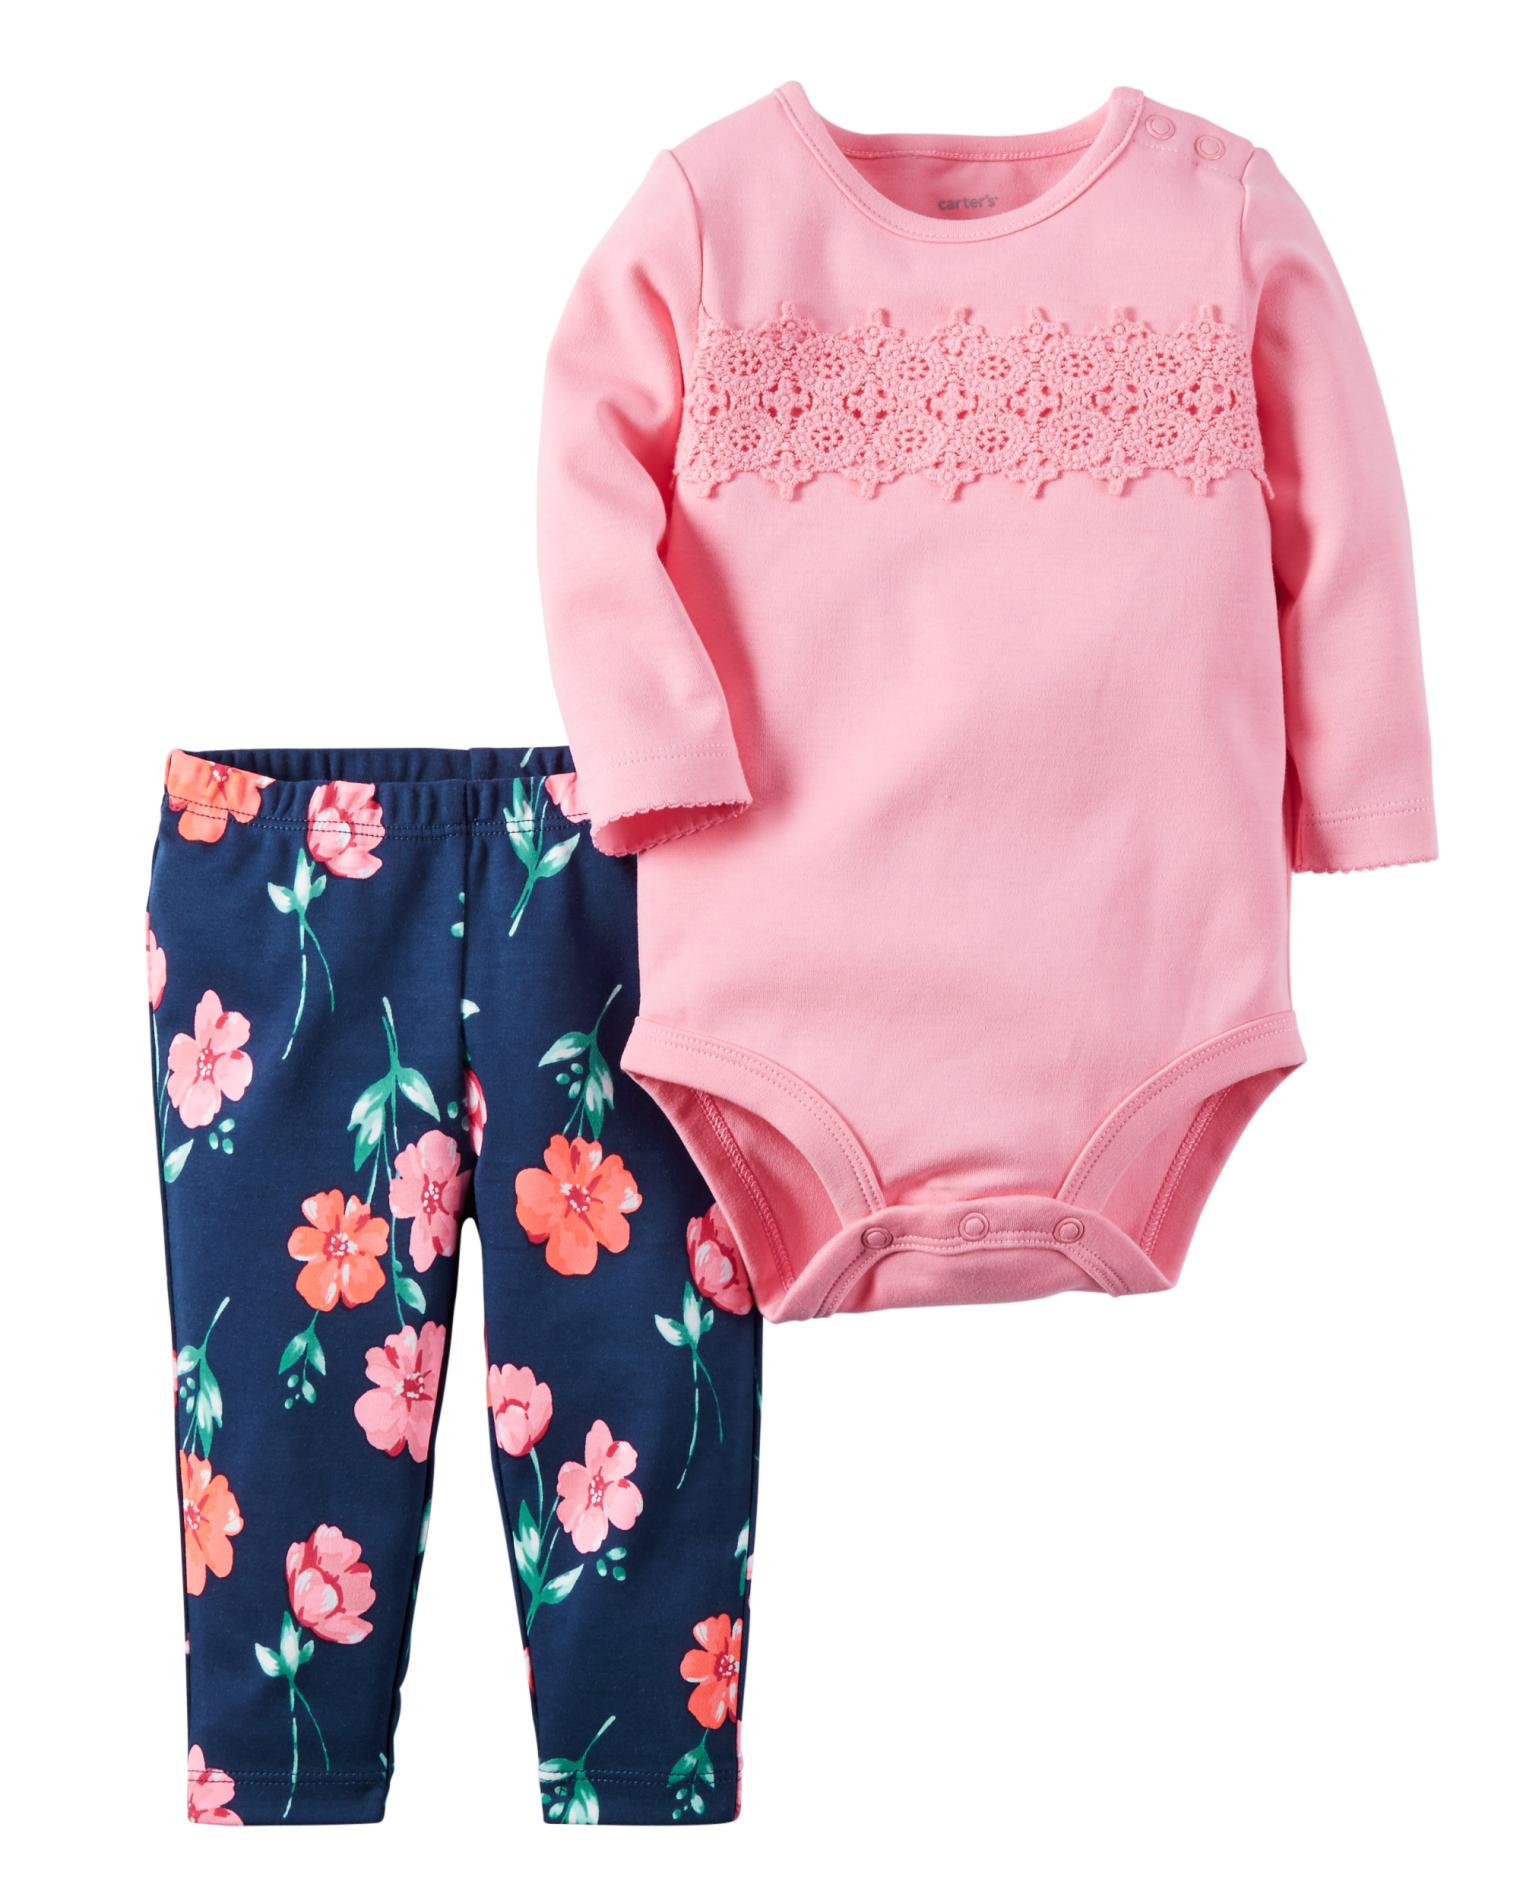 Carter's Newborn & Infant Girls' Long-Sleeve Bodysuit & Leggings - Floral